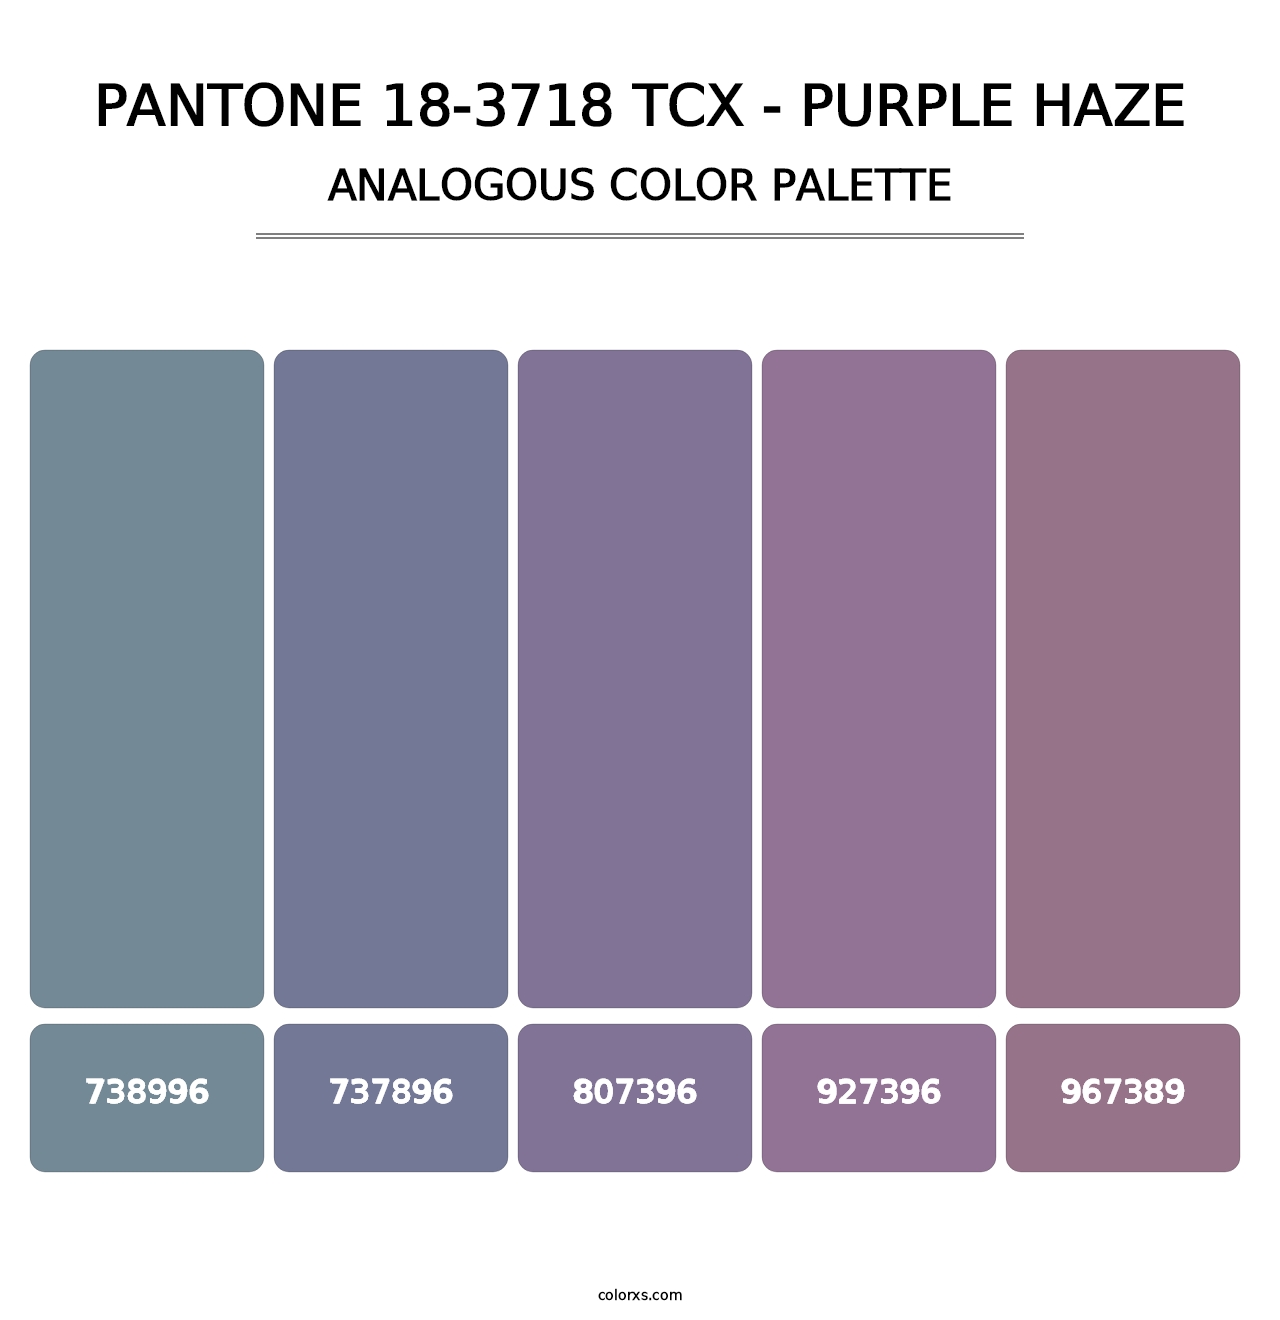 PANTONE 18-3718 TCX - Purple Haze - Analogous Color Palette